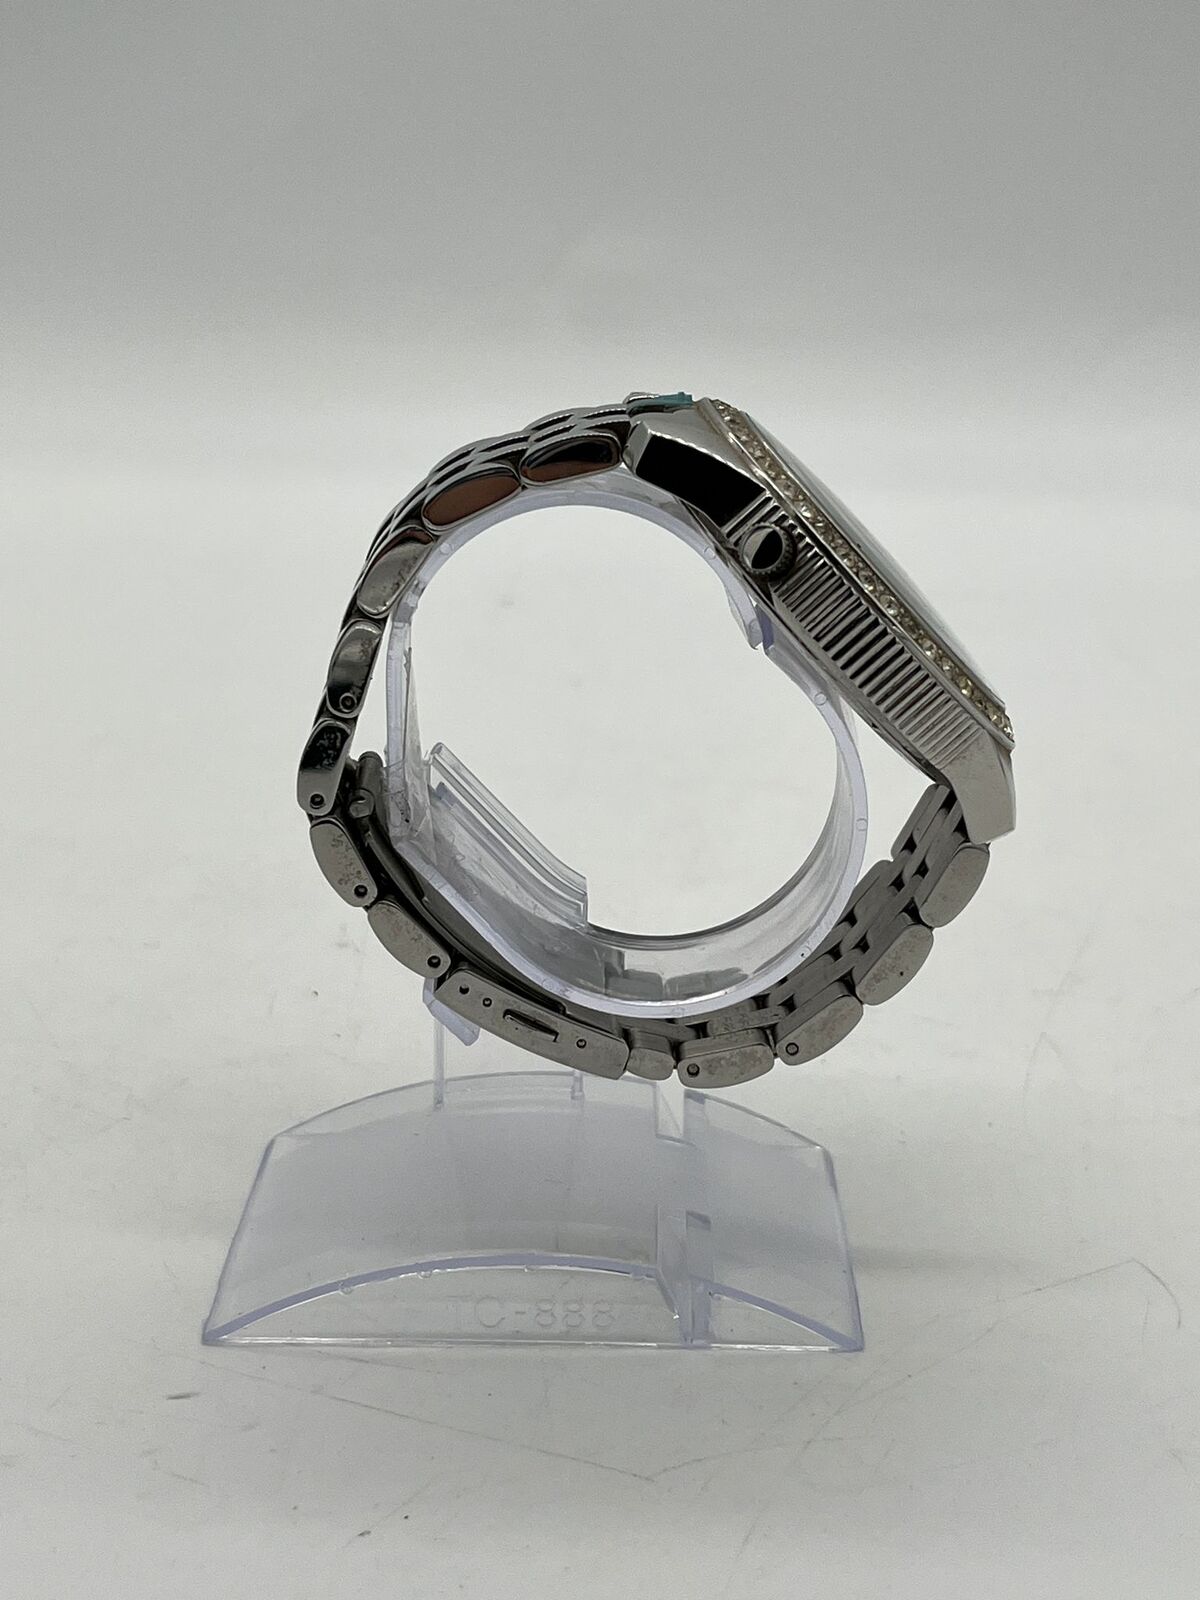 Marc Ecko The Equation Men's Stainless Steel Bracelet, Black Black Dial  e14540g1 | eBay